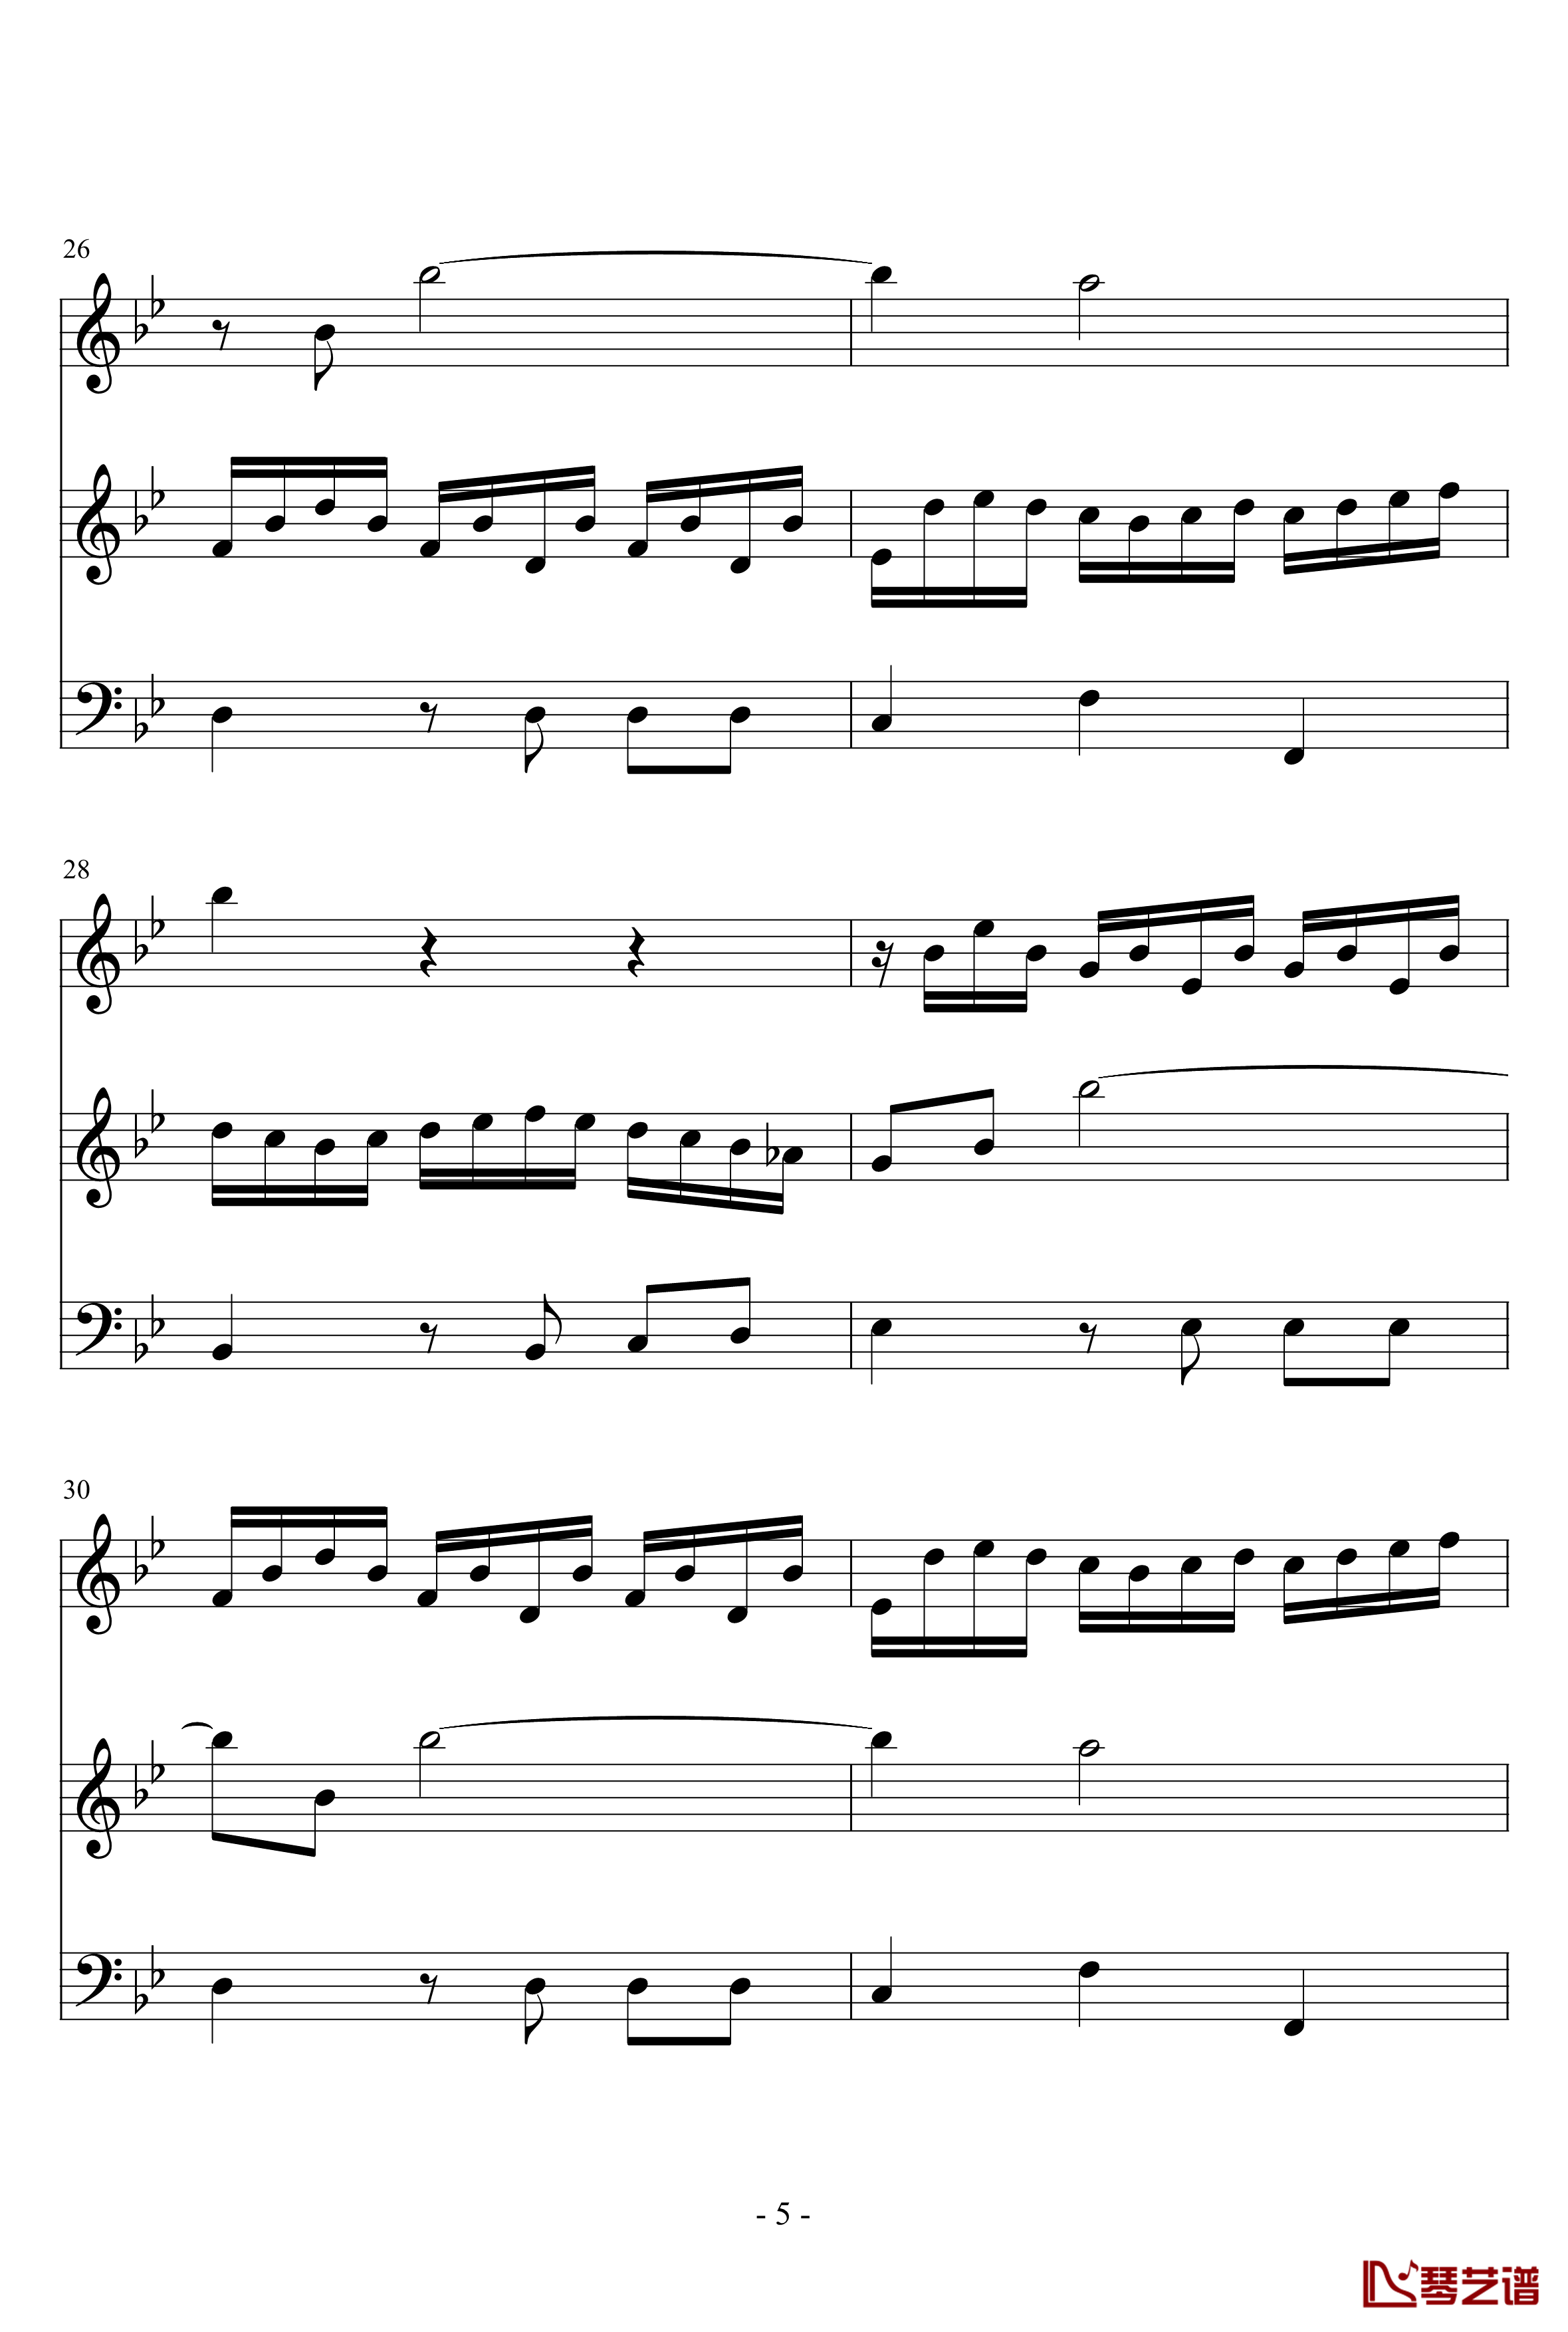 长笛与羽管键琴奏鸣曲第一乐章钢琴谱-巴赫-P.E.Bach5